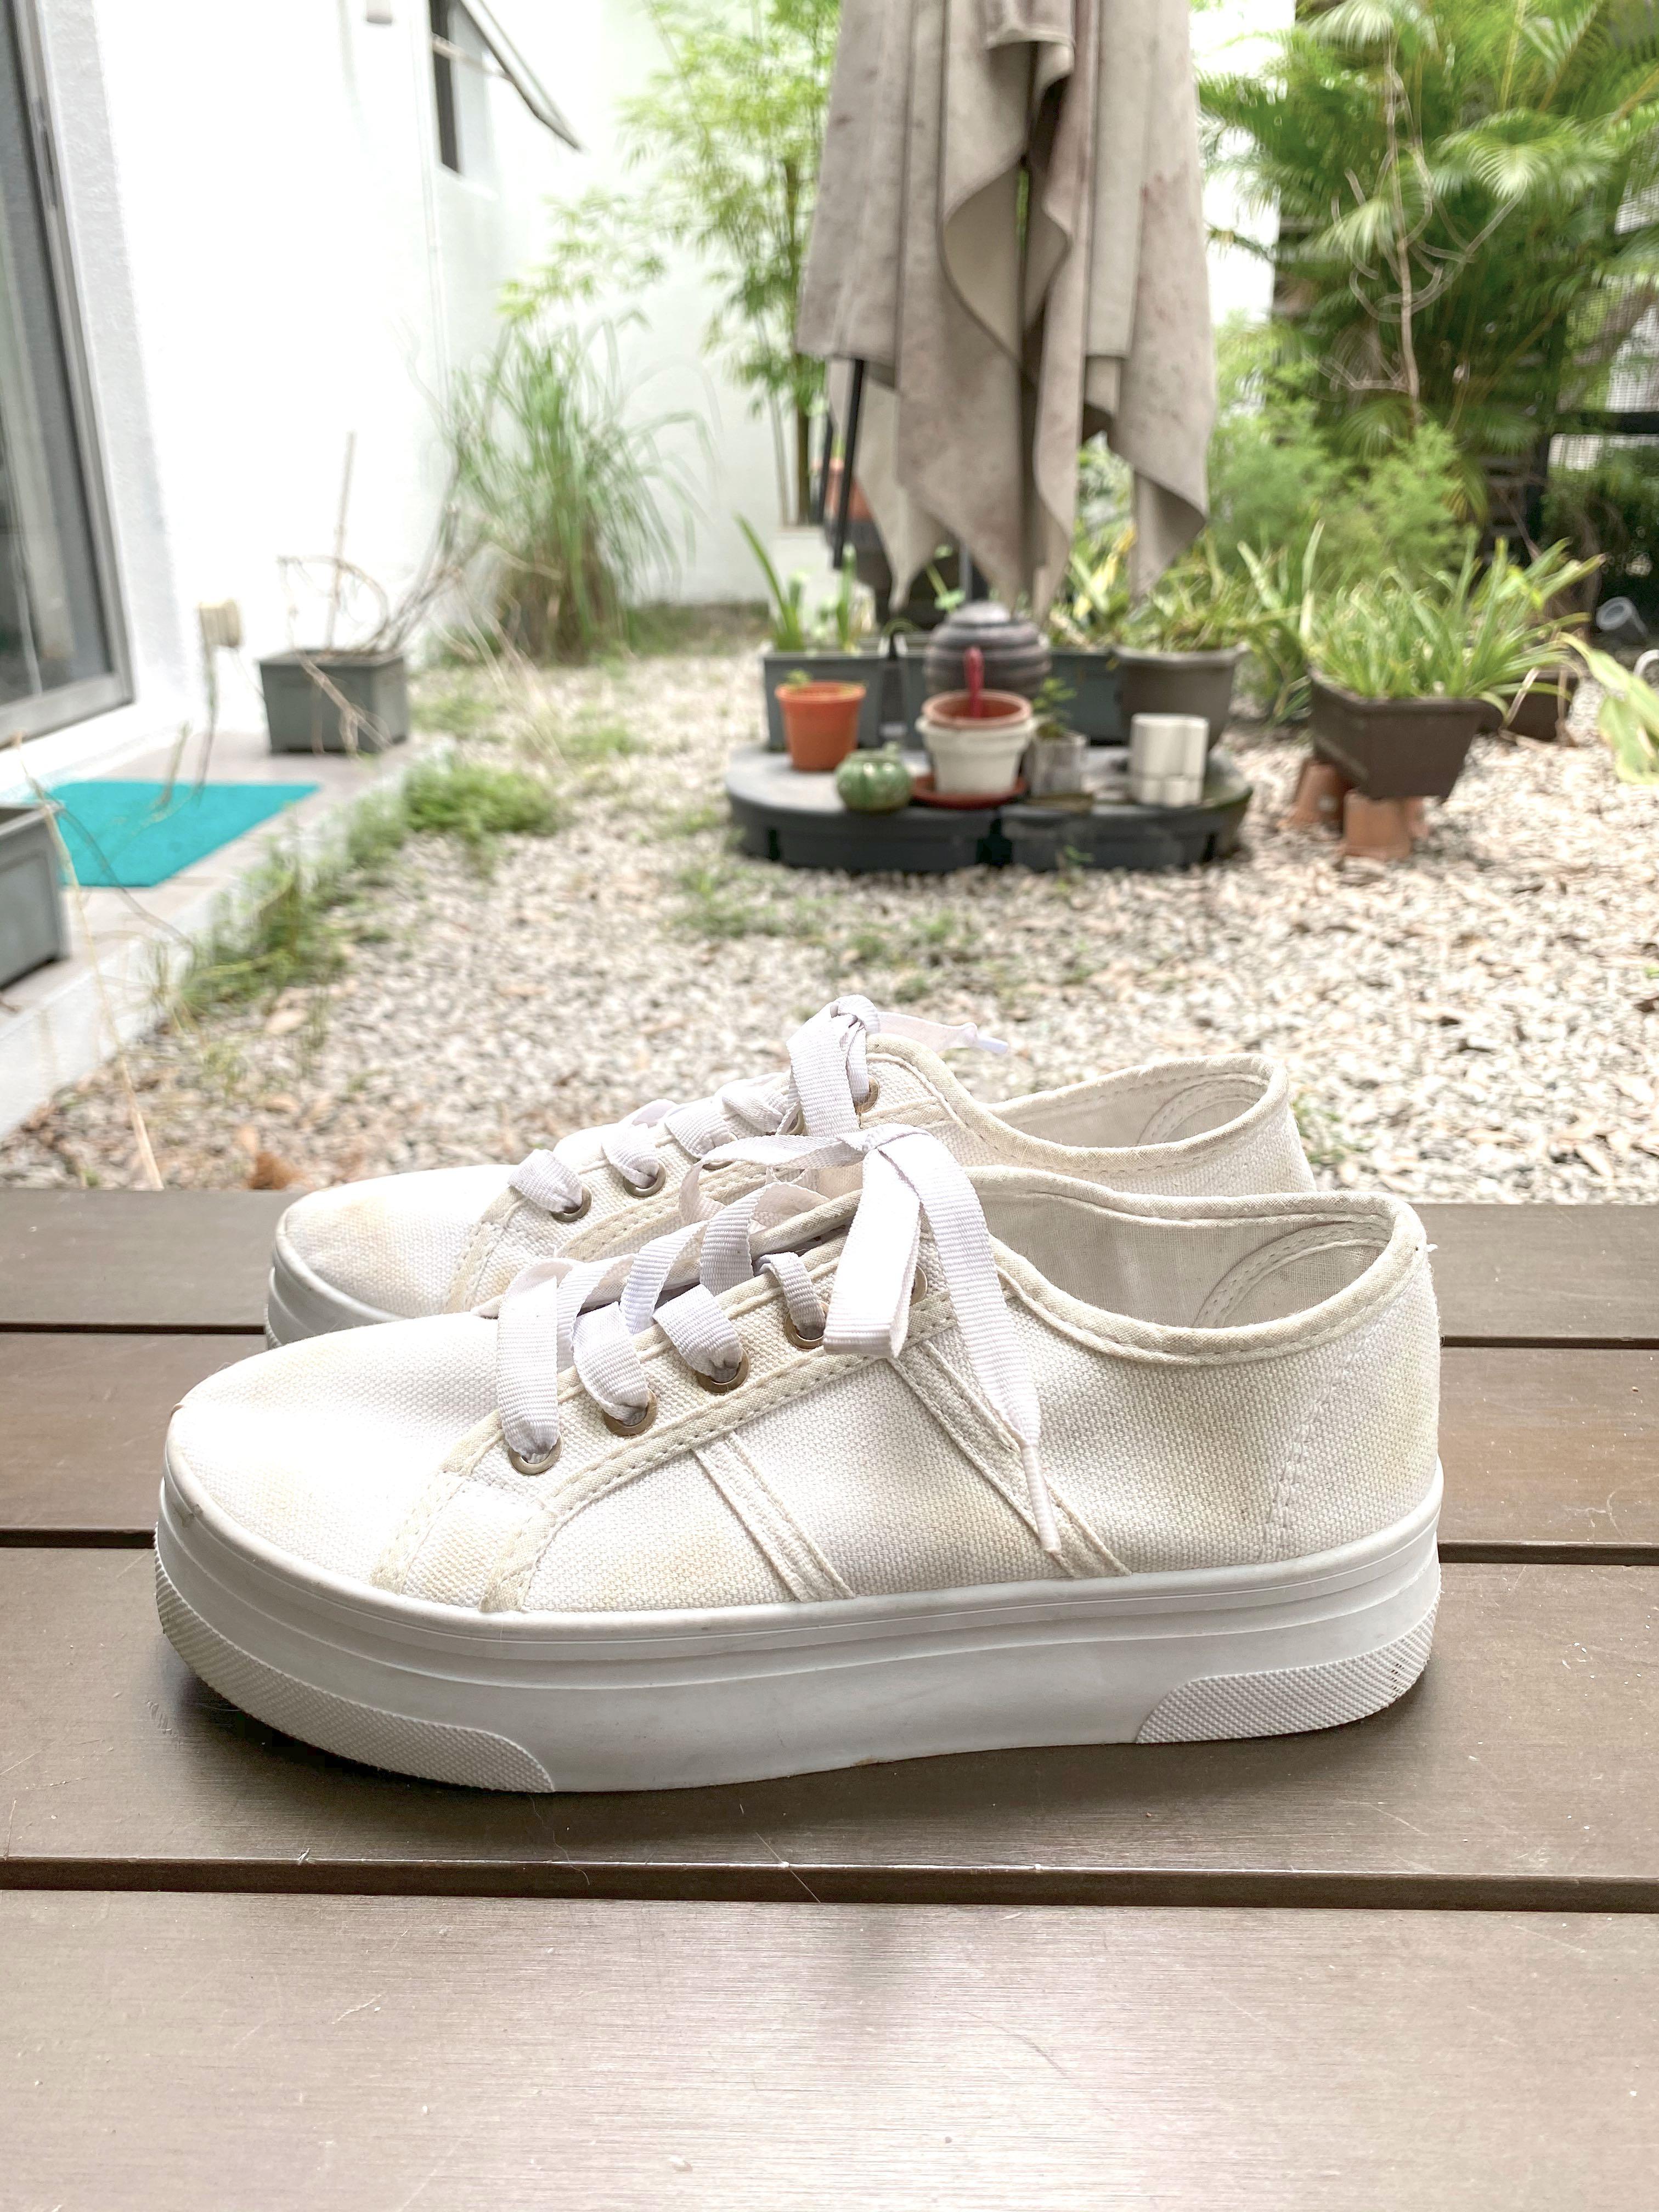 rubi shoes white sneakers